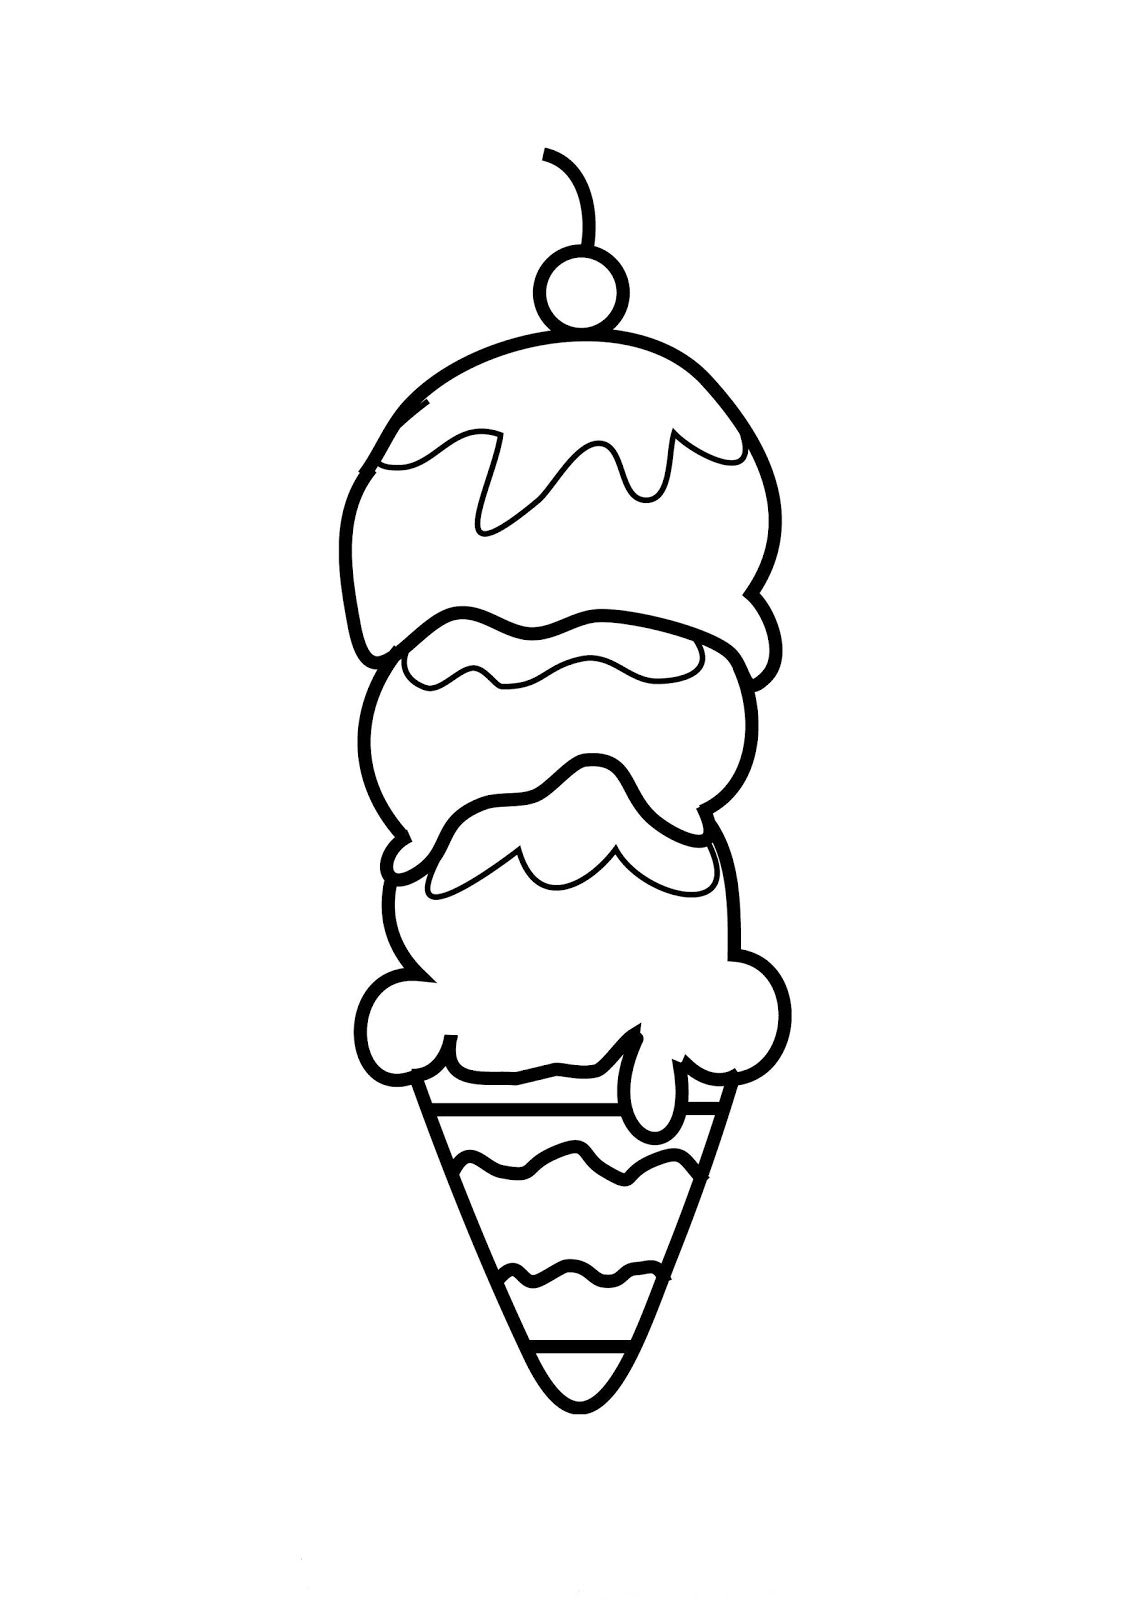 Раскраска мороженщик. Раскраска мороженое. Мороженое раскраска для детей. Мороженщик раскраска. Раскраски с мороженым.